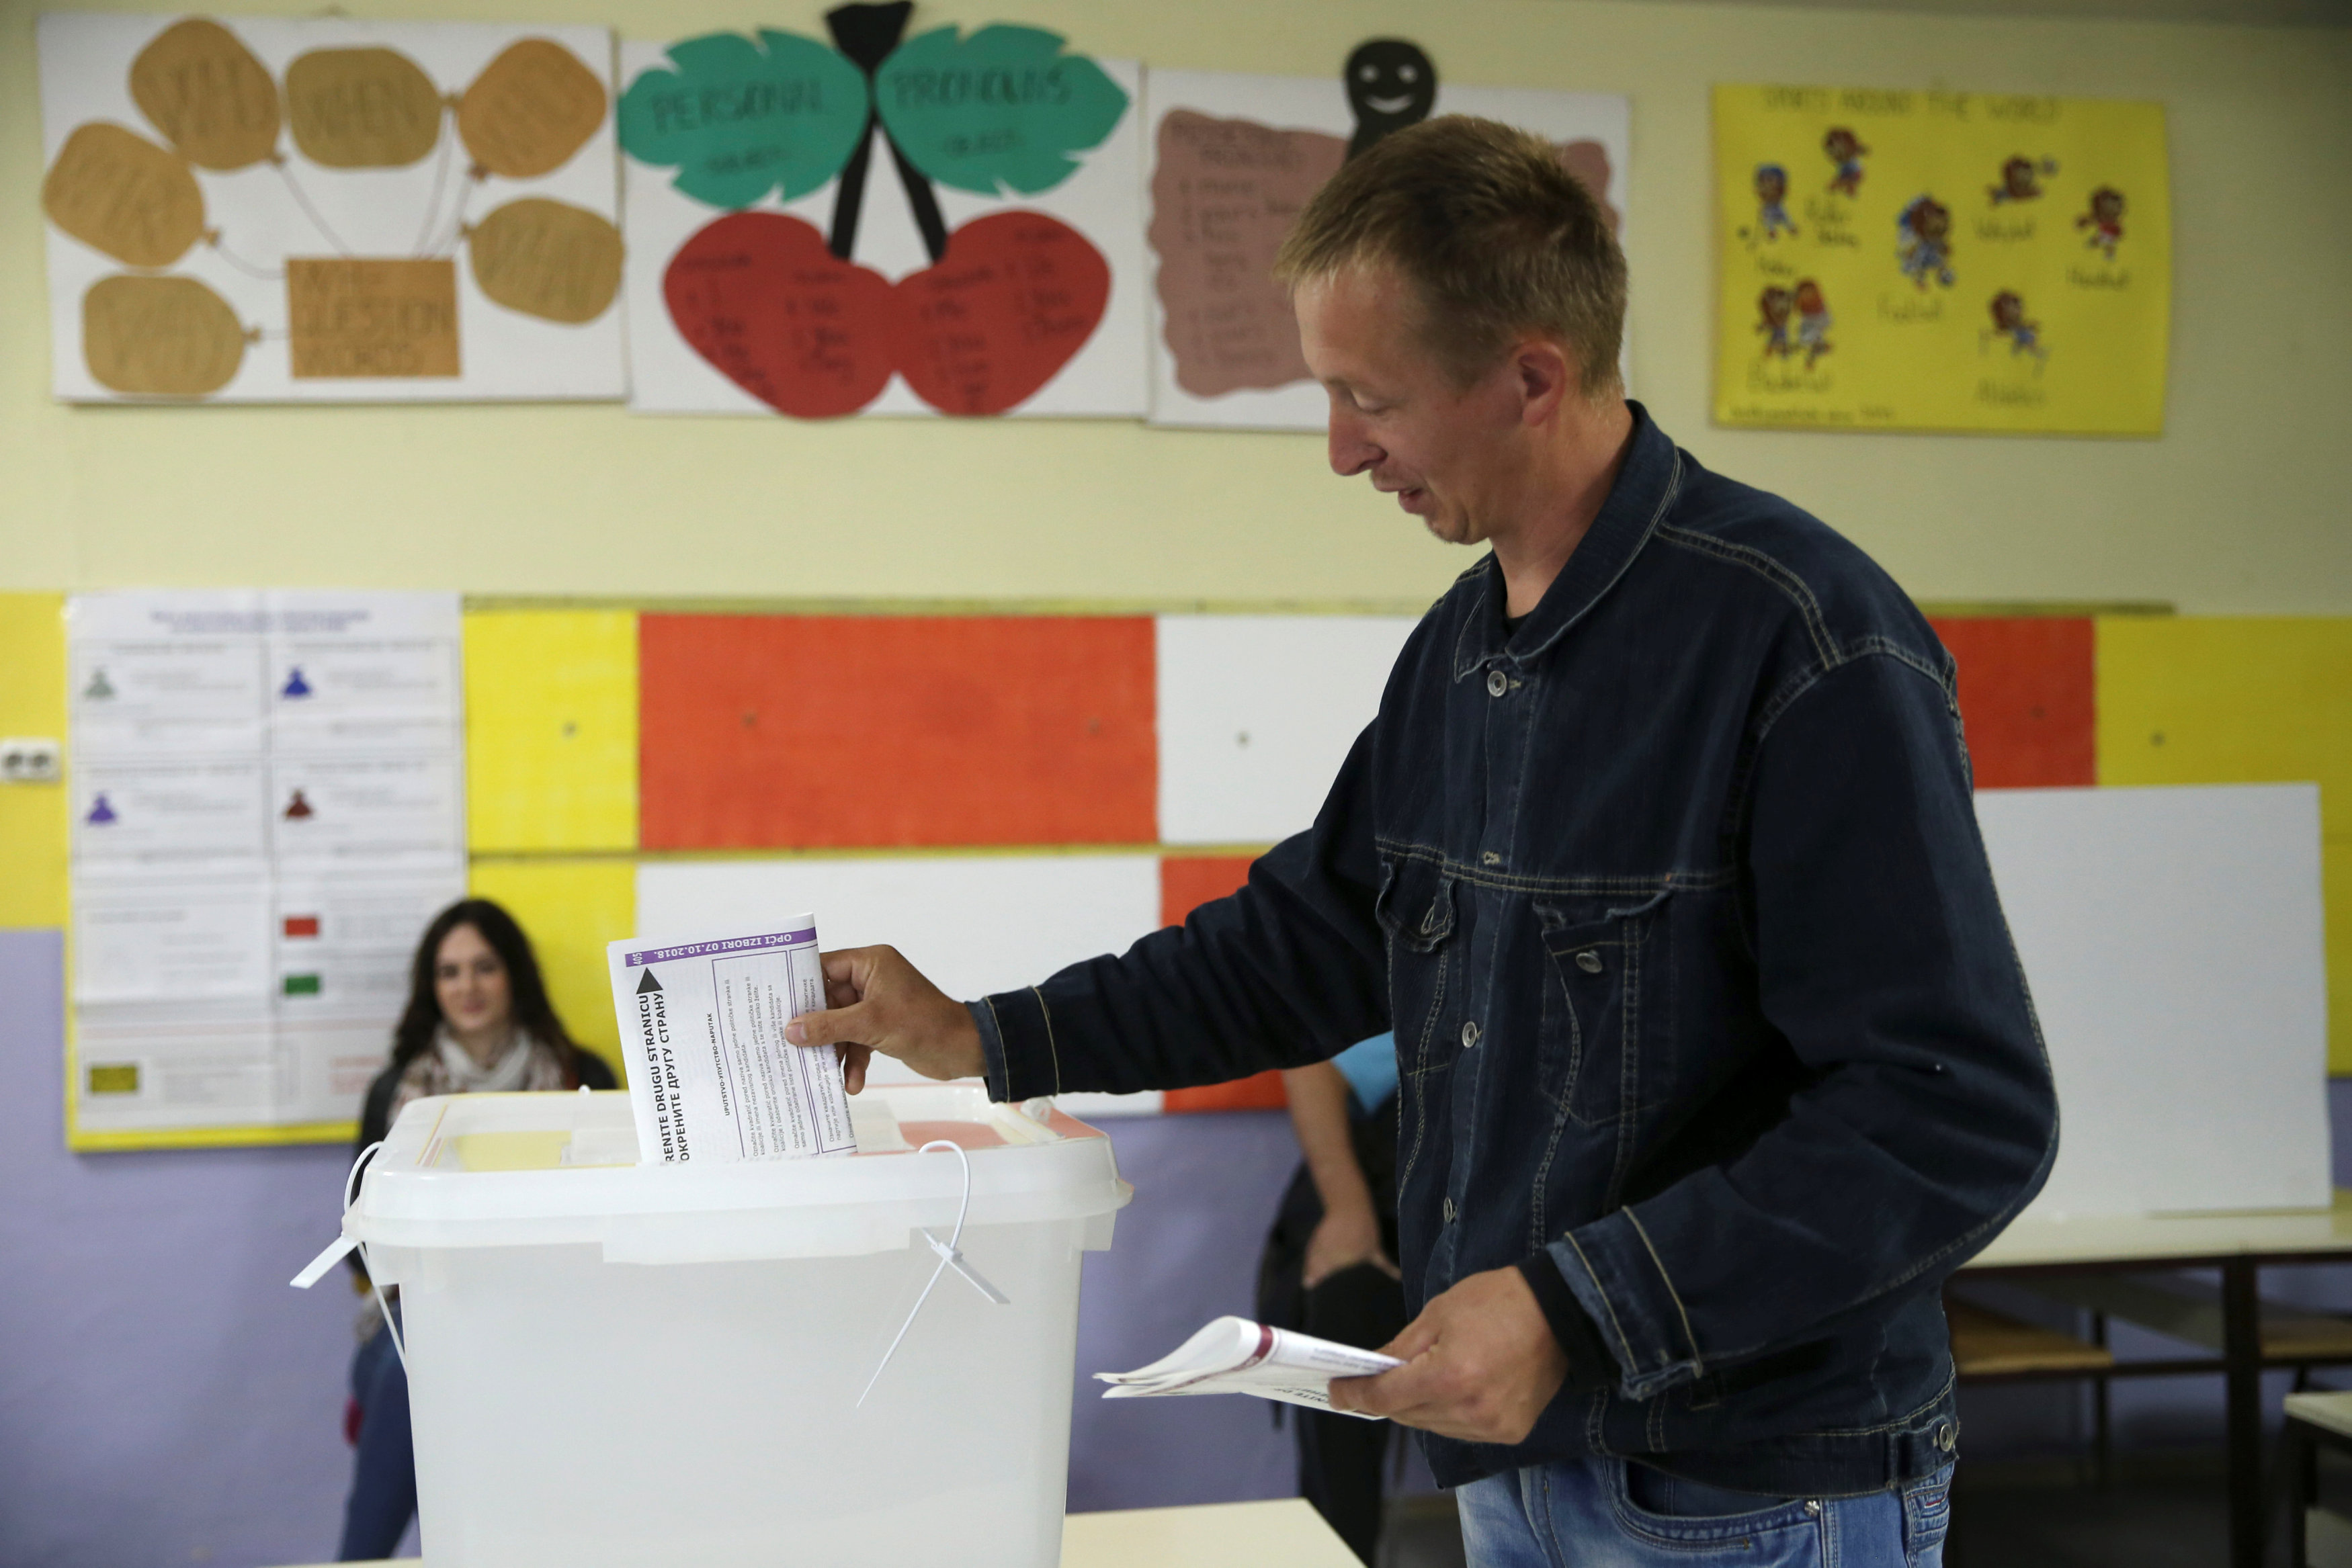 أحد المواطنين يضع ورقة الاقتراع بالصندوق بعدالتصويت